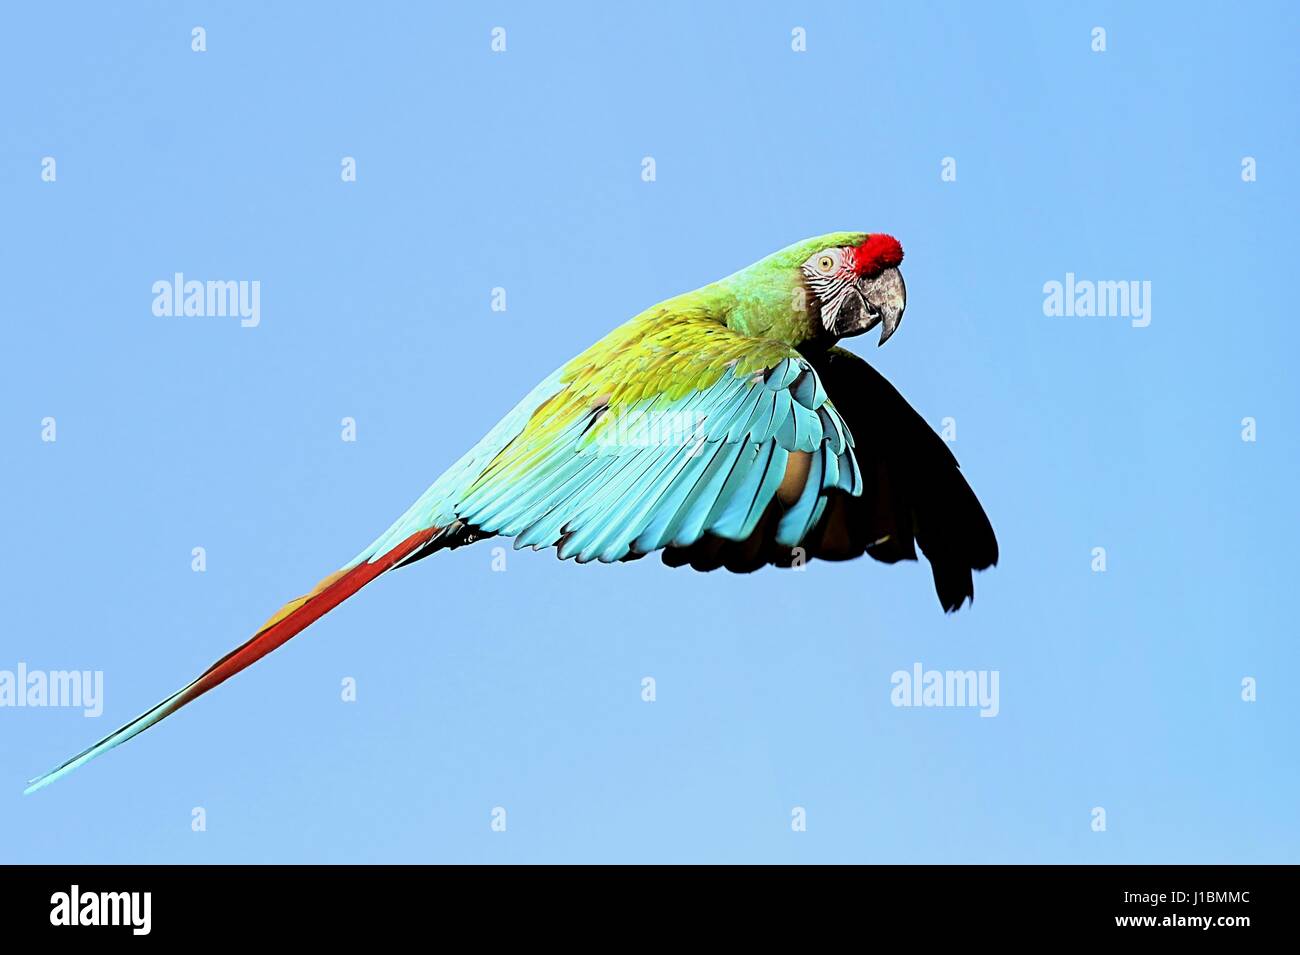 South American Military macaw (Ara militaris) in flight Stock Photo